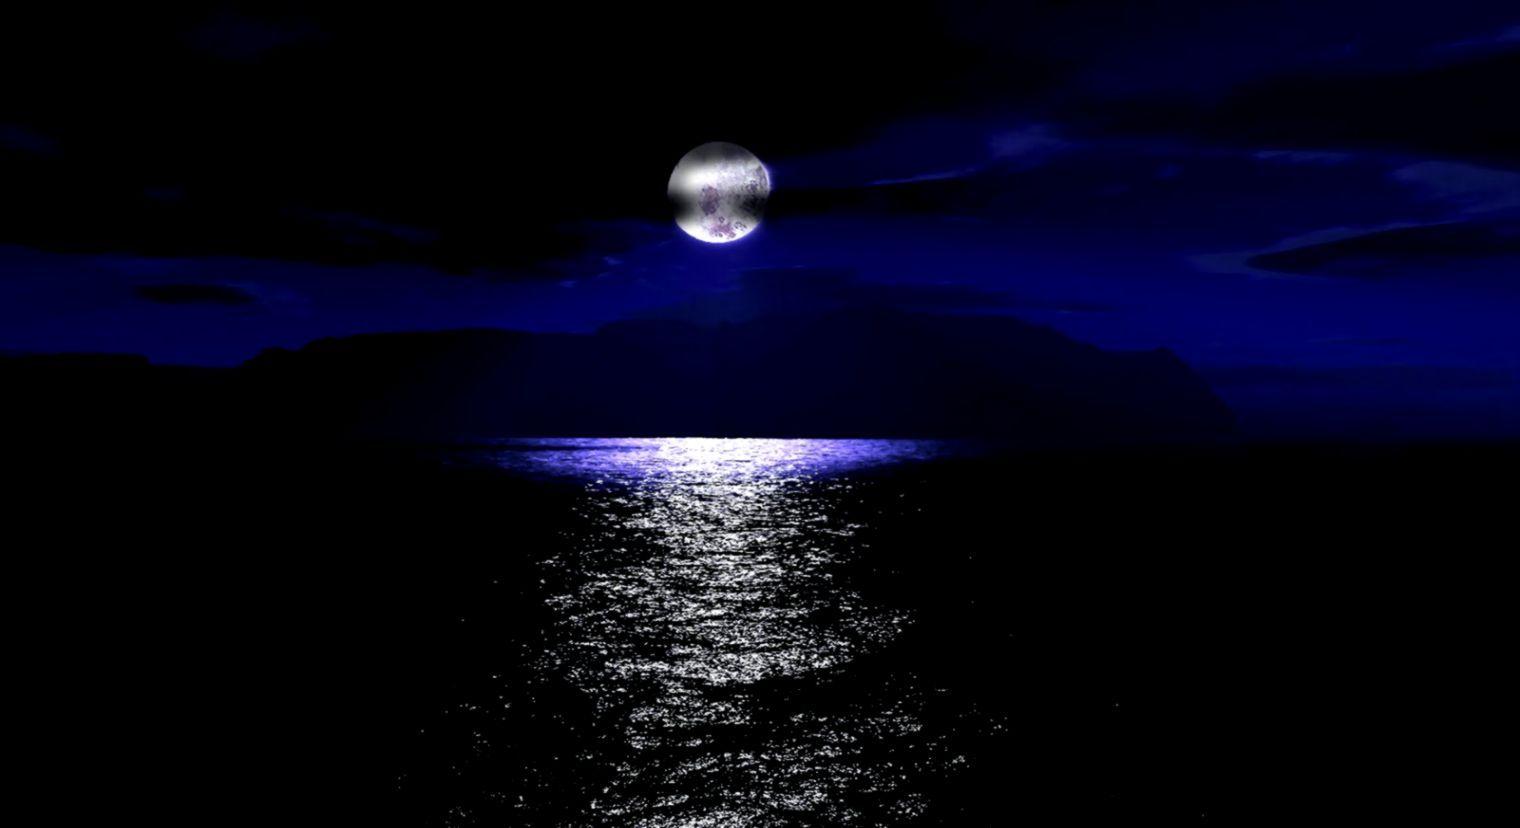 Hình nền đại dương đêm 1520x828 1520x828 px